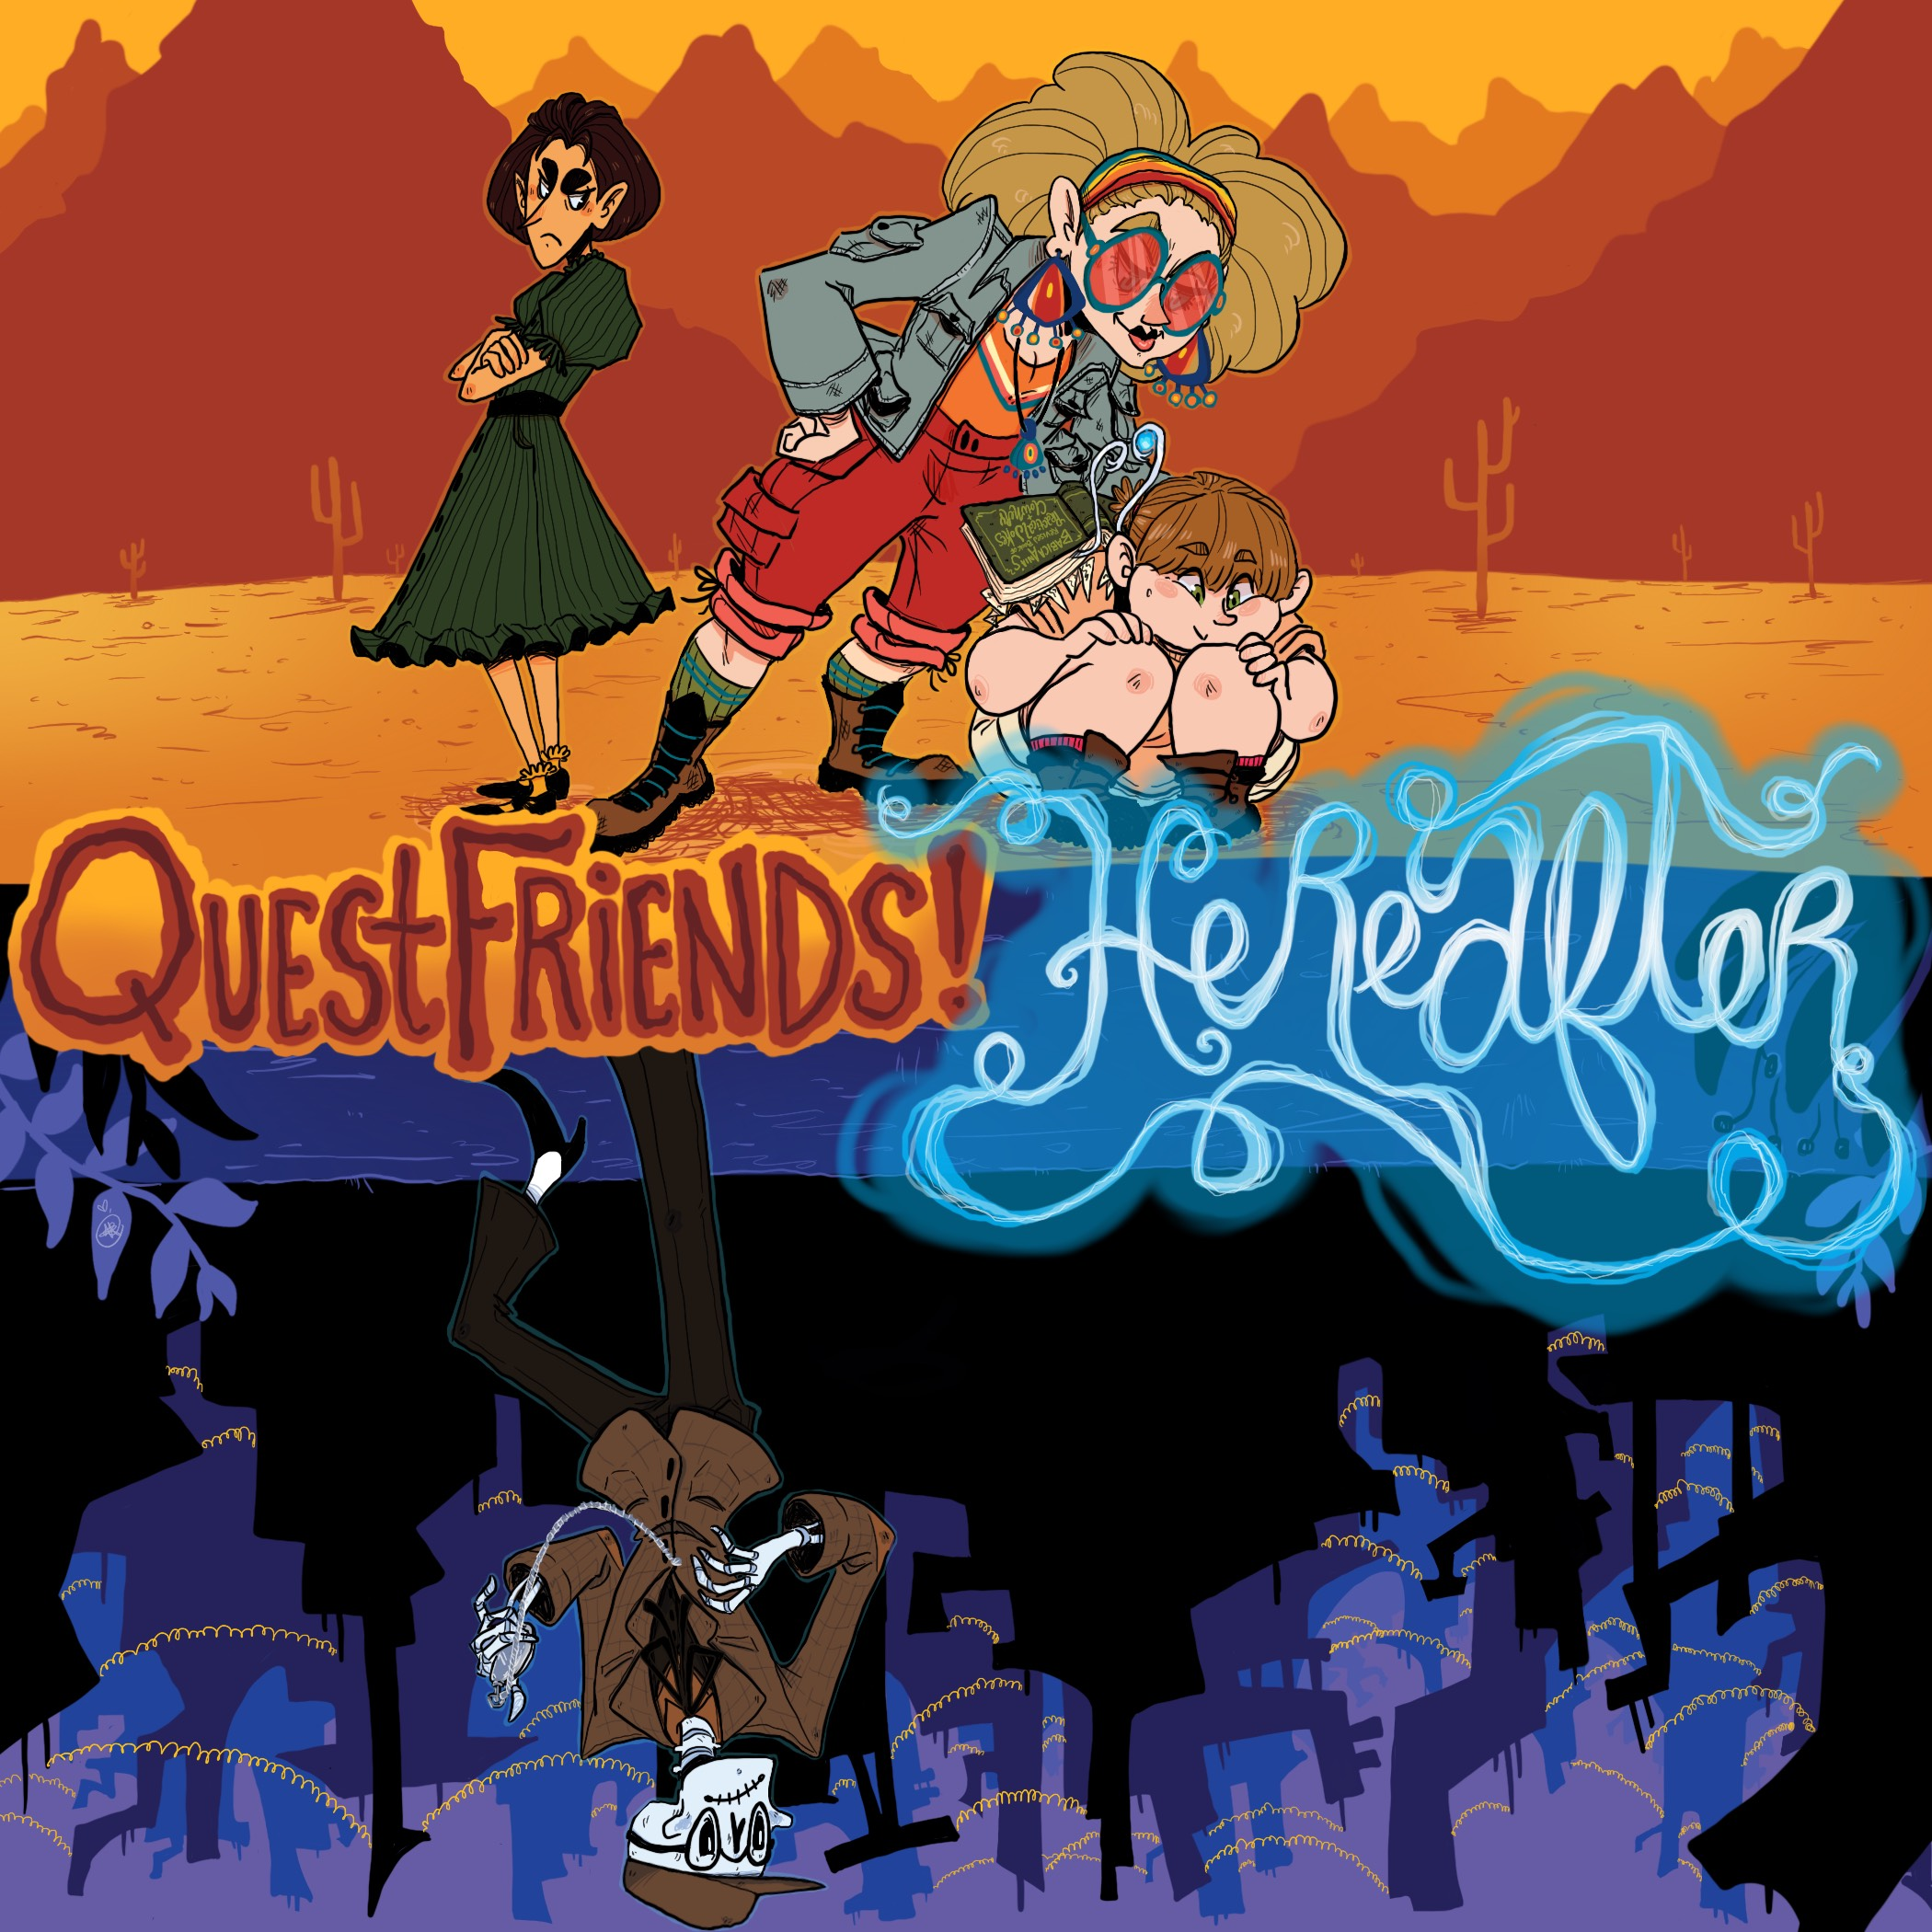 Quest Friends!